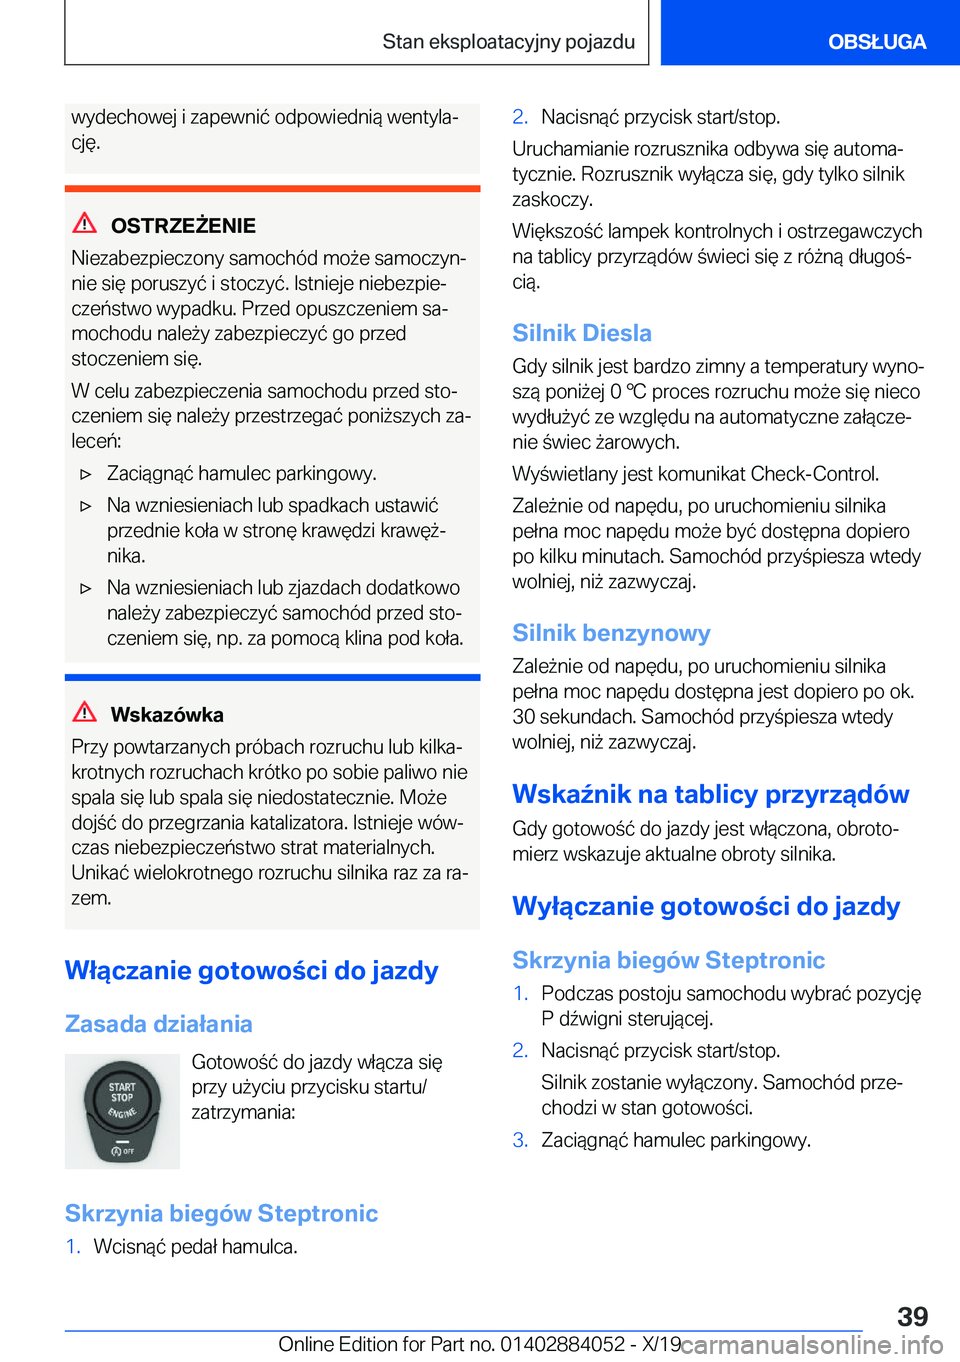 BMW 7 SERIES 2020  Instrukcja obsługi (in Polish) �w�y�d�e�c�h�o�w�e�j��i��z�a�p�e�w�n�i�